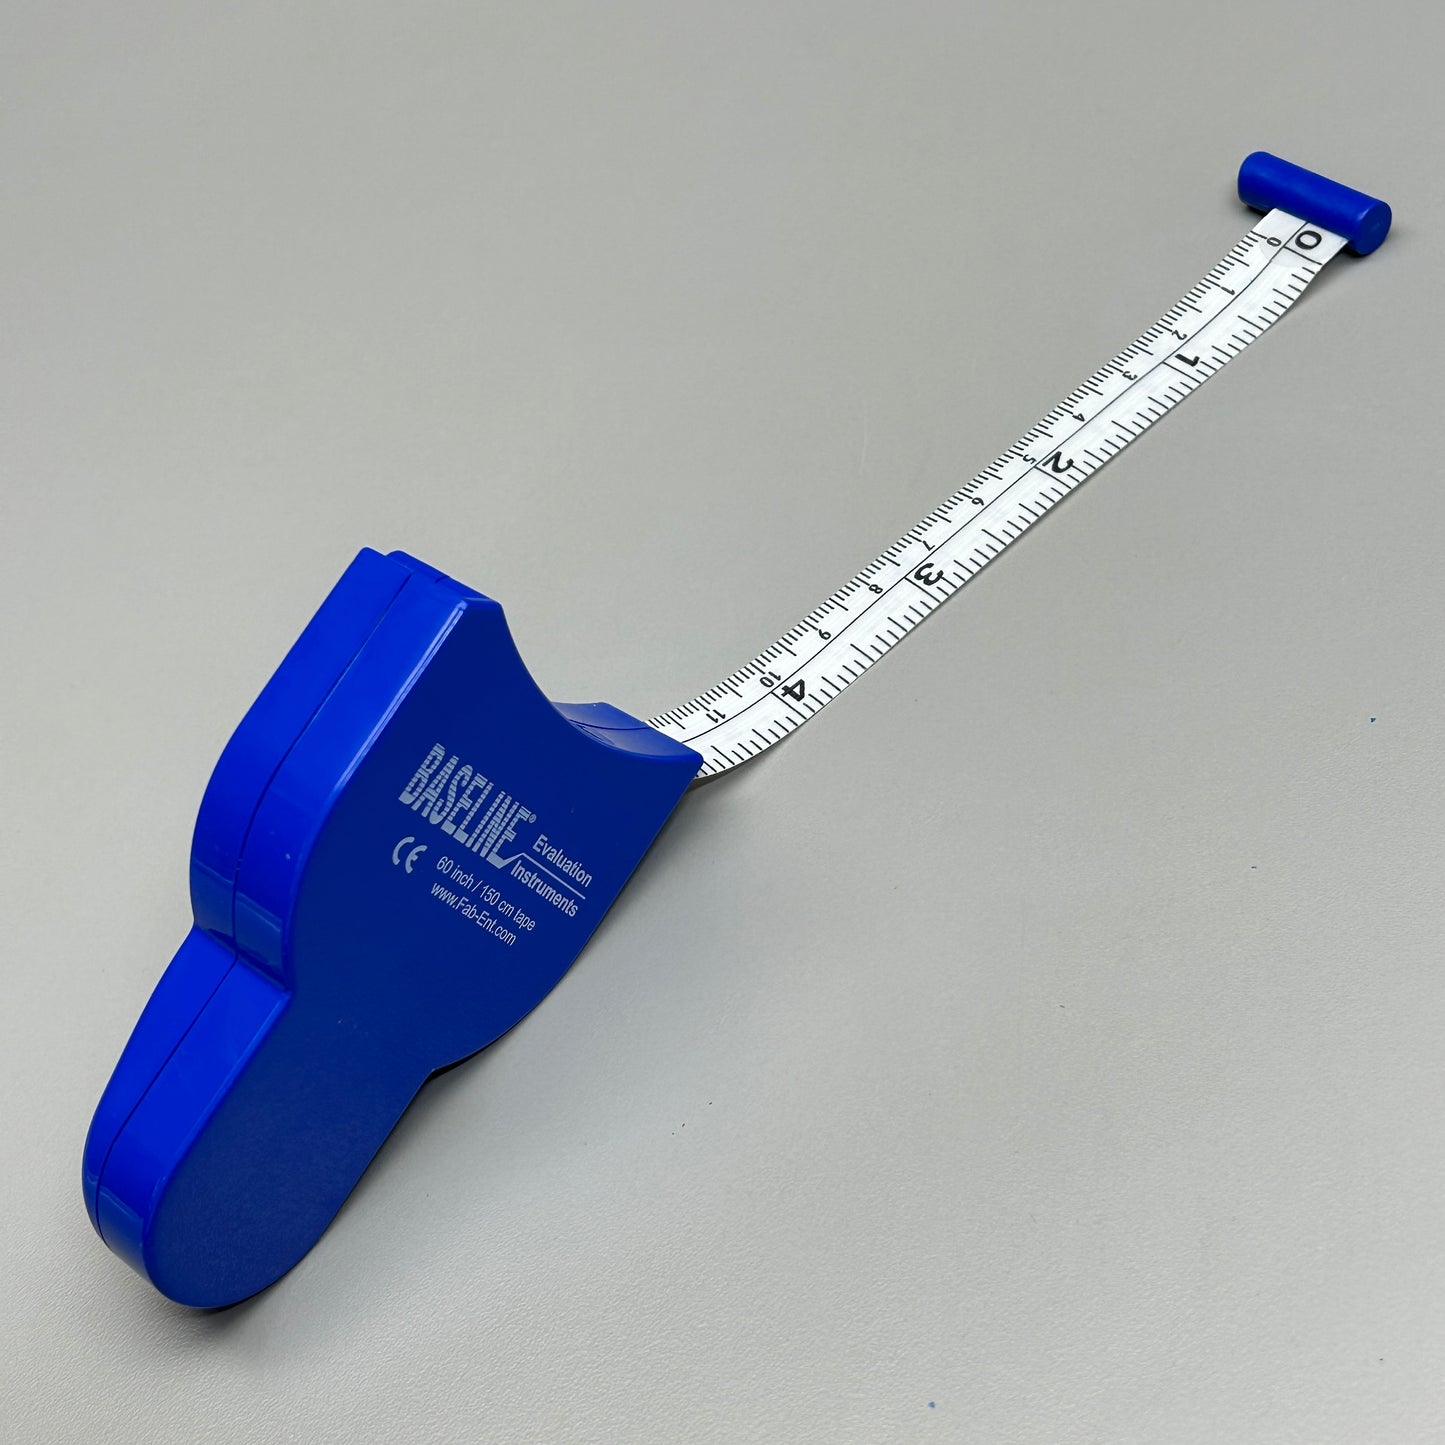 BASELINE EVALUATION INSTRUMENTS Measurement Tape Push Button Retractor 60" (New)